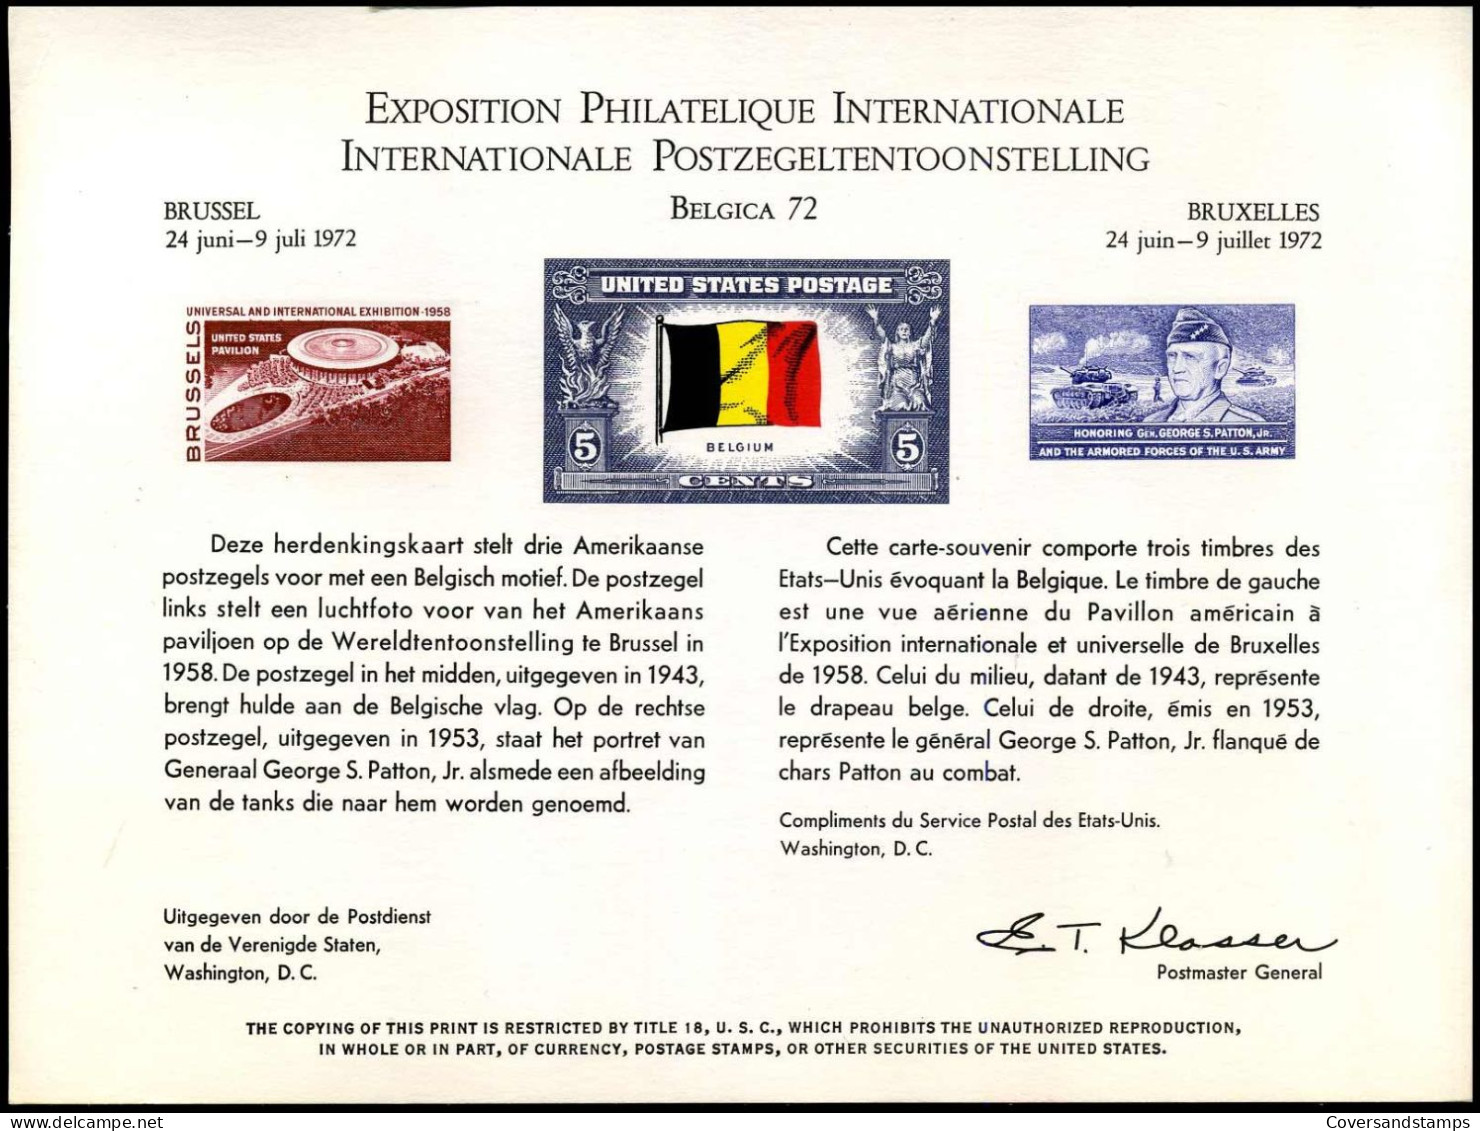 Belgica 72 - Internationale Postzegeltentoonstelling - United States Postage - Cartes Souvenir – Emissions Communes [HK]